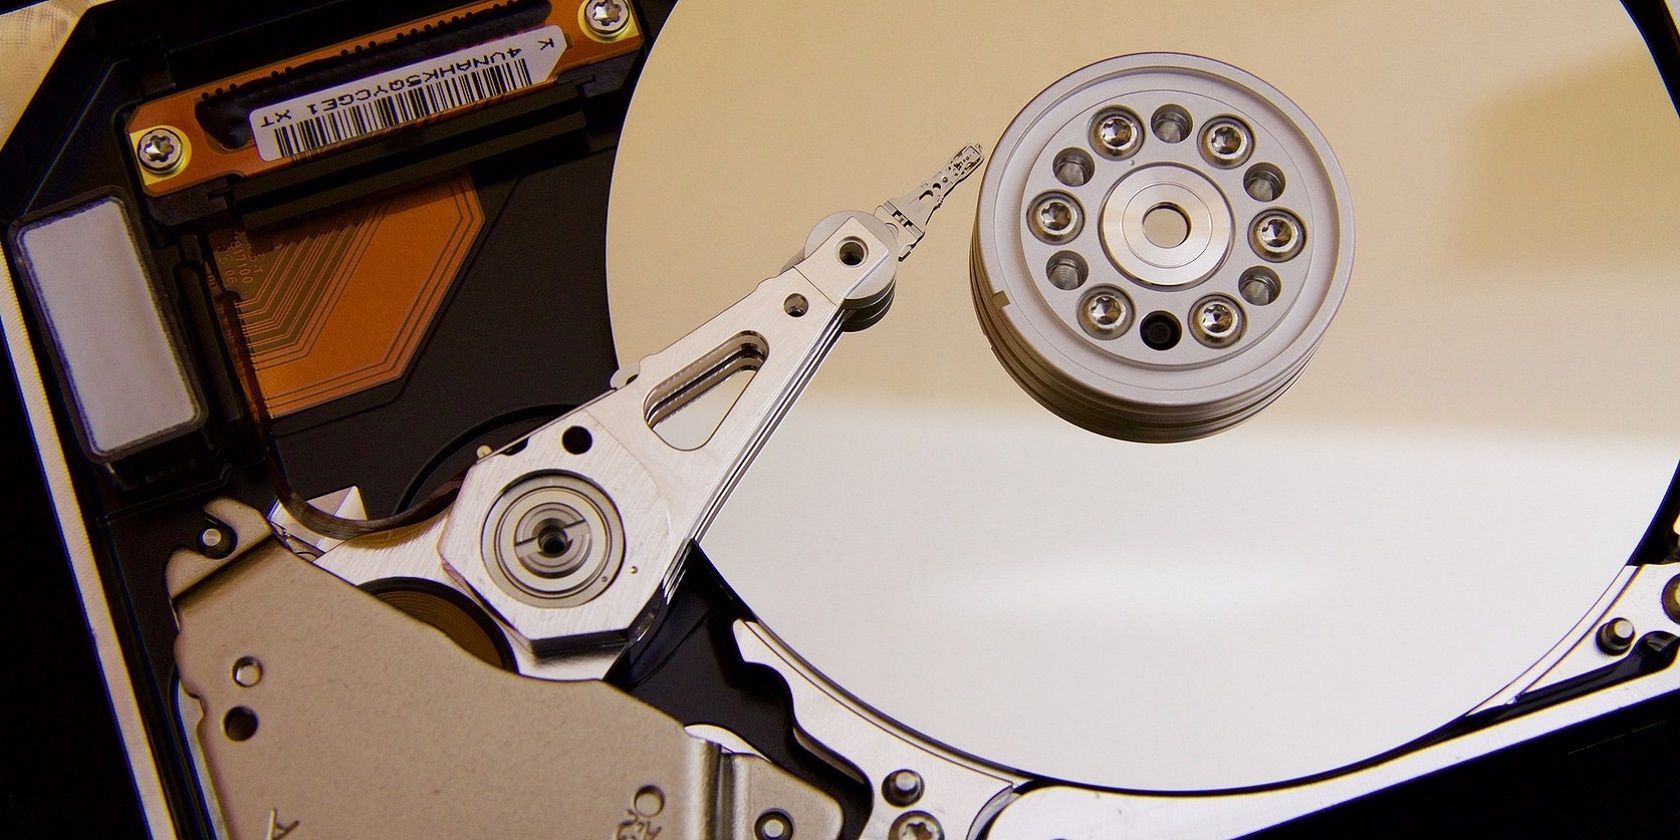 A hard drive disk